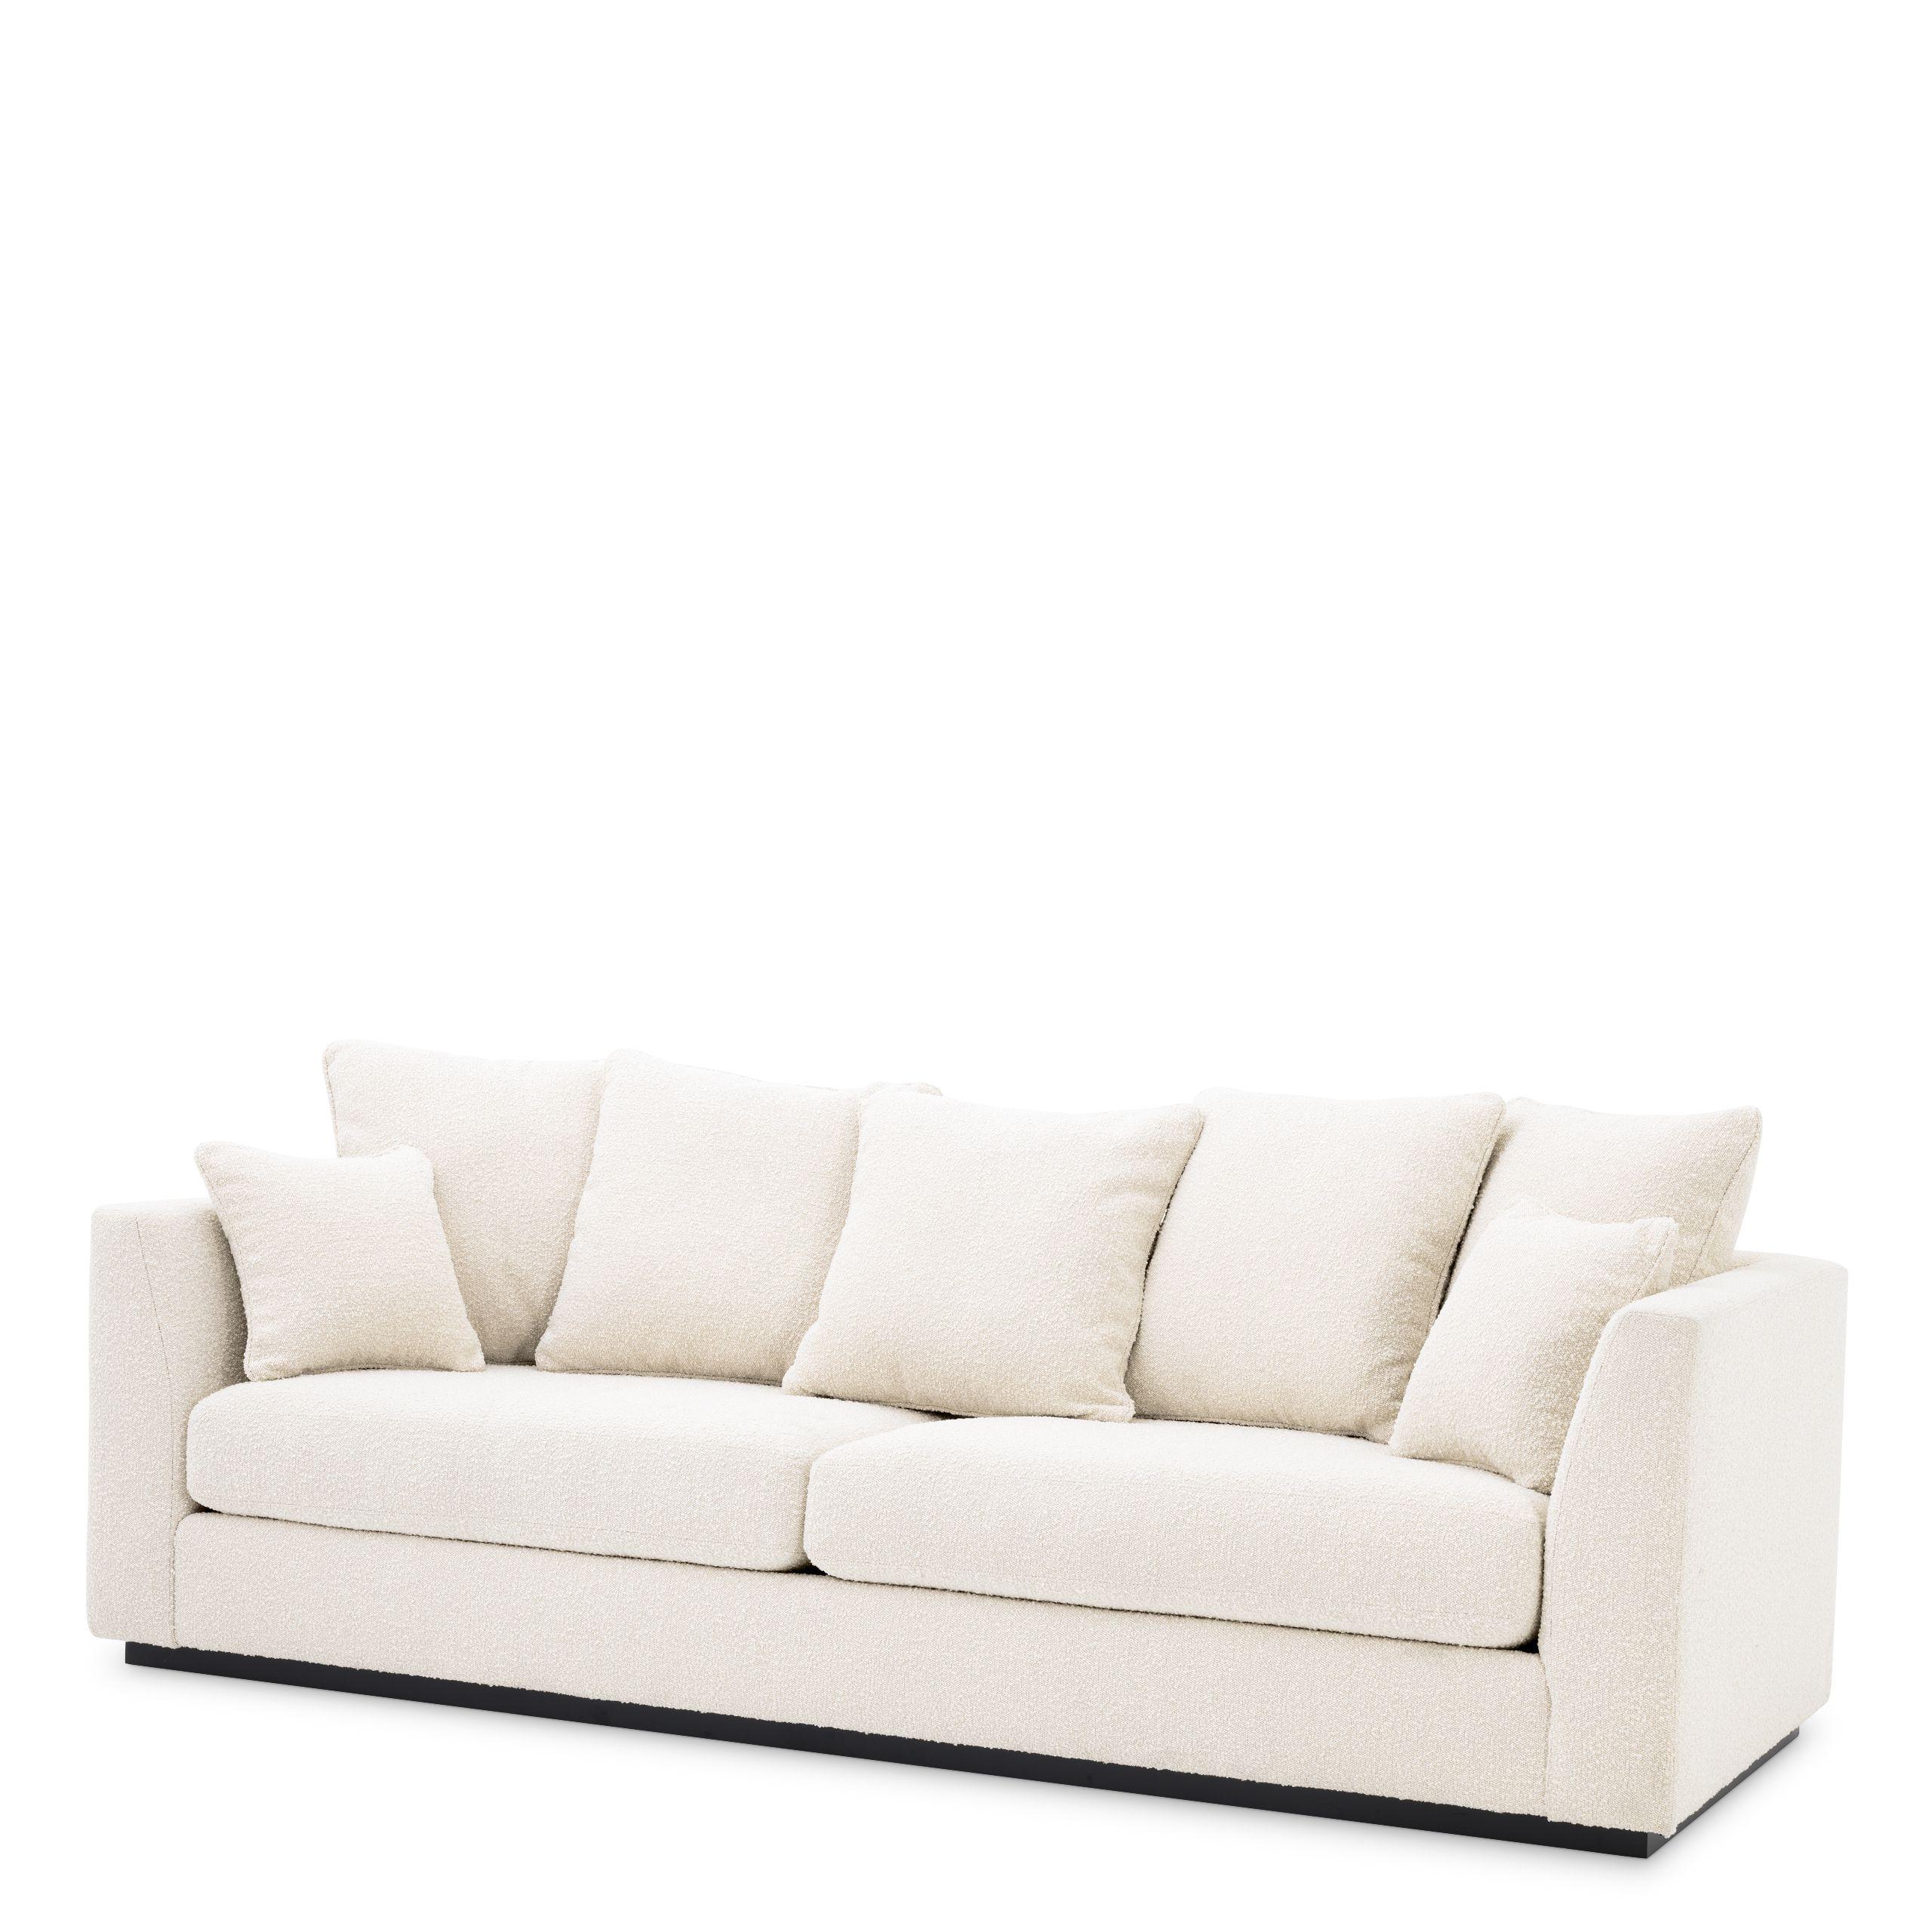 Купить Прямой диван Sofa Taylor в интернет-магазине roooms.ru